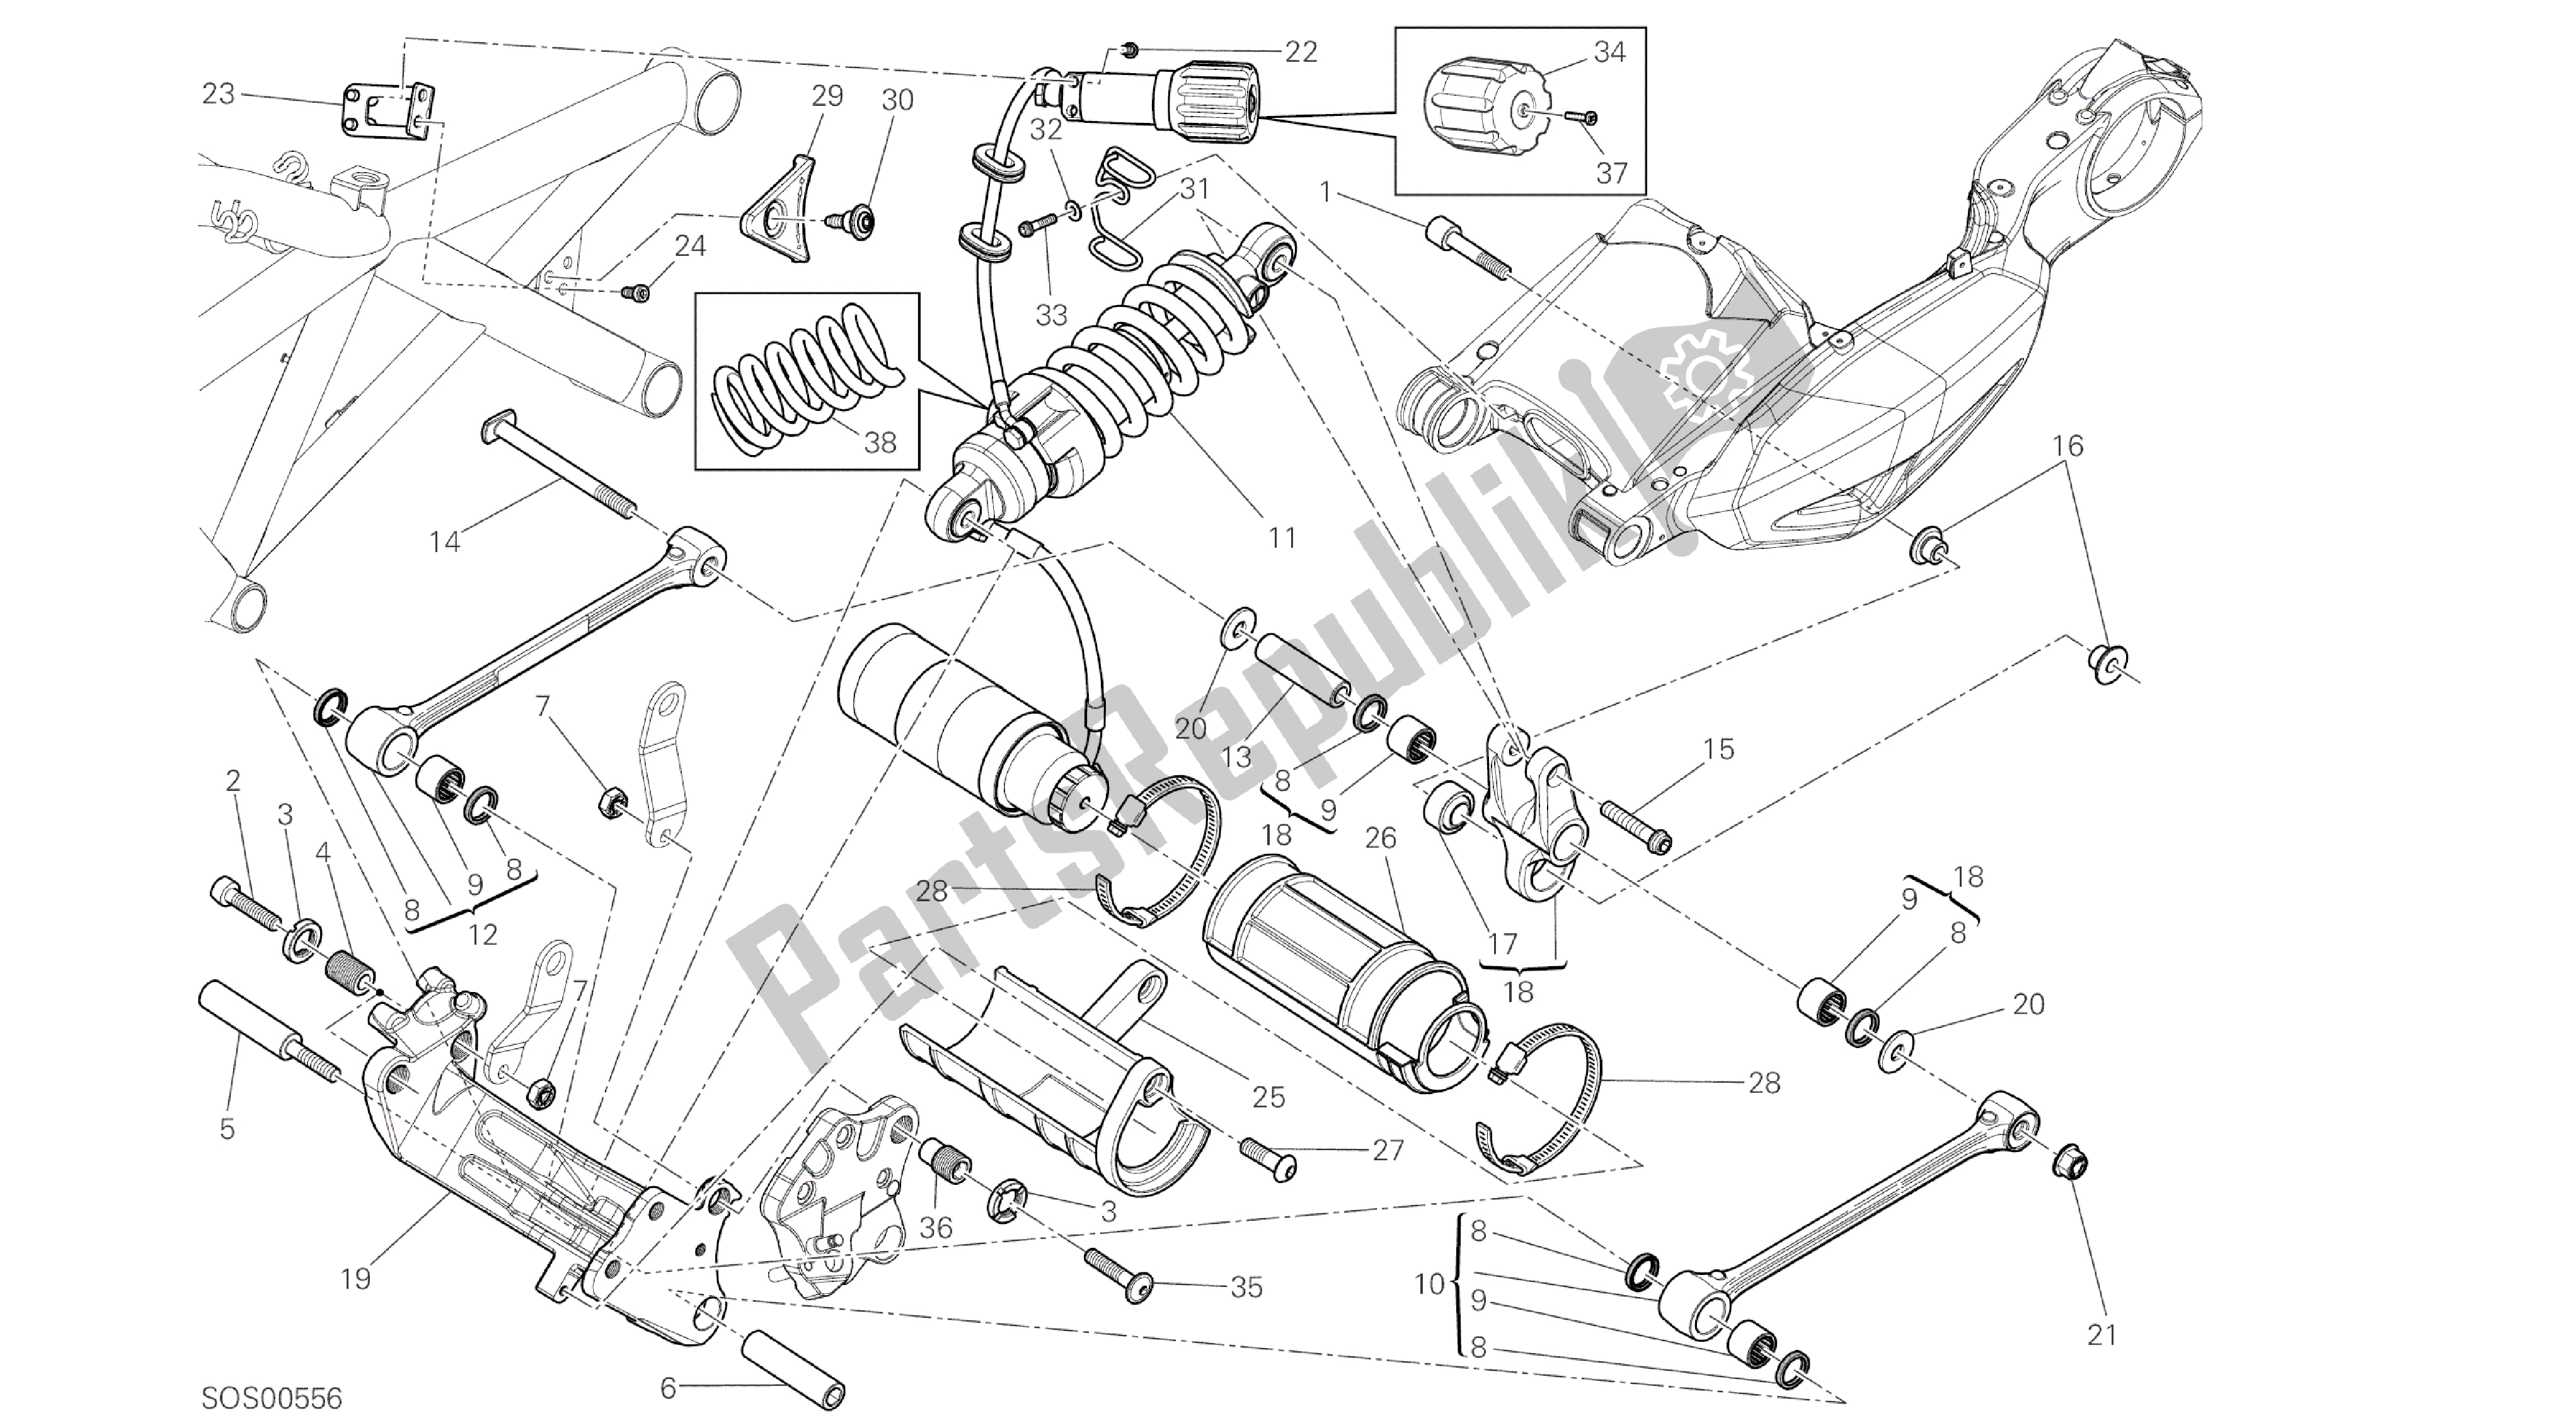 Todas las partes para Dibujo 028 - Bastidor Del Grupo Amortiguador Trasero [mod: Dvl] de Ducati Diavel 1200 2016